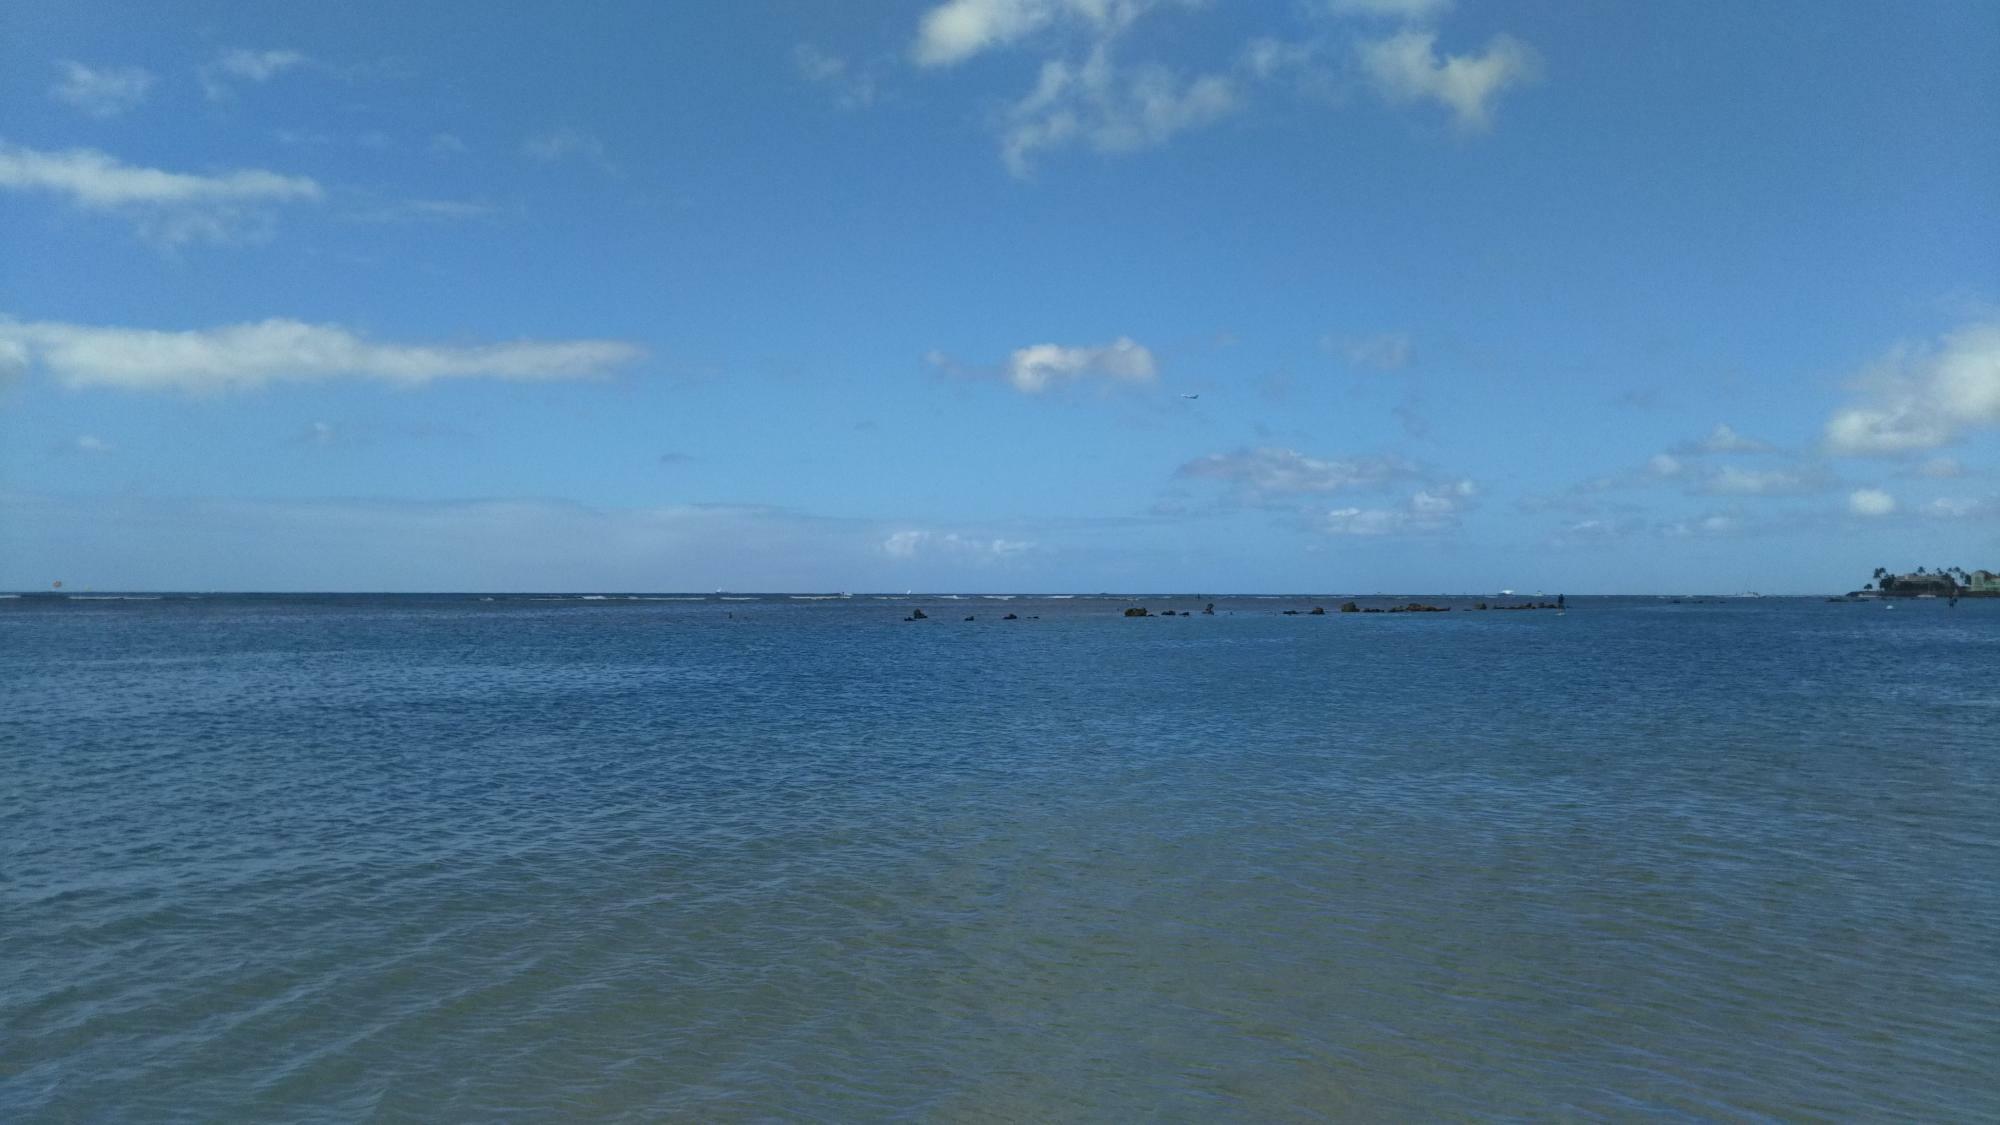 スティッチの弱点は水で、海中では泳ぐことも呼吸することさえままならない。海中に落下する予定だったスティッチの宇宙船は、運命の悪戯かハワイ・カウアイ島の陸地に落下する（2019年　ハワイ州内筆者撮影）。